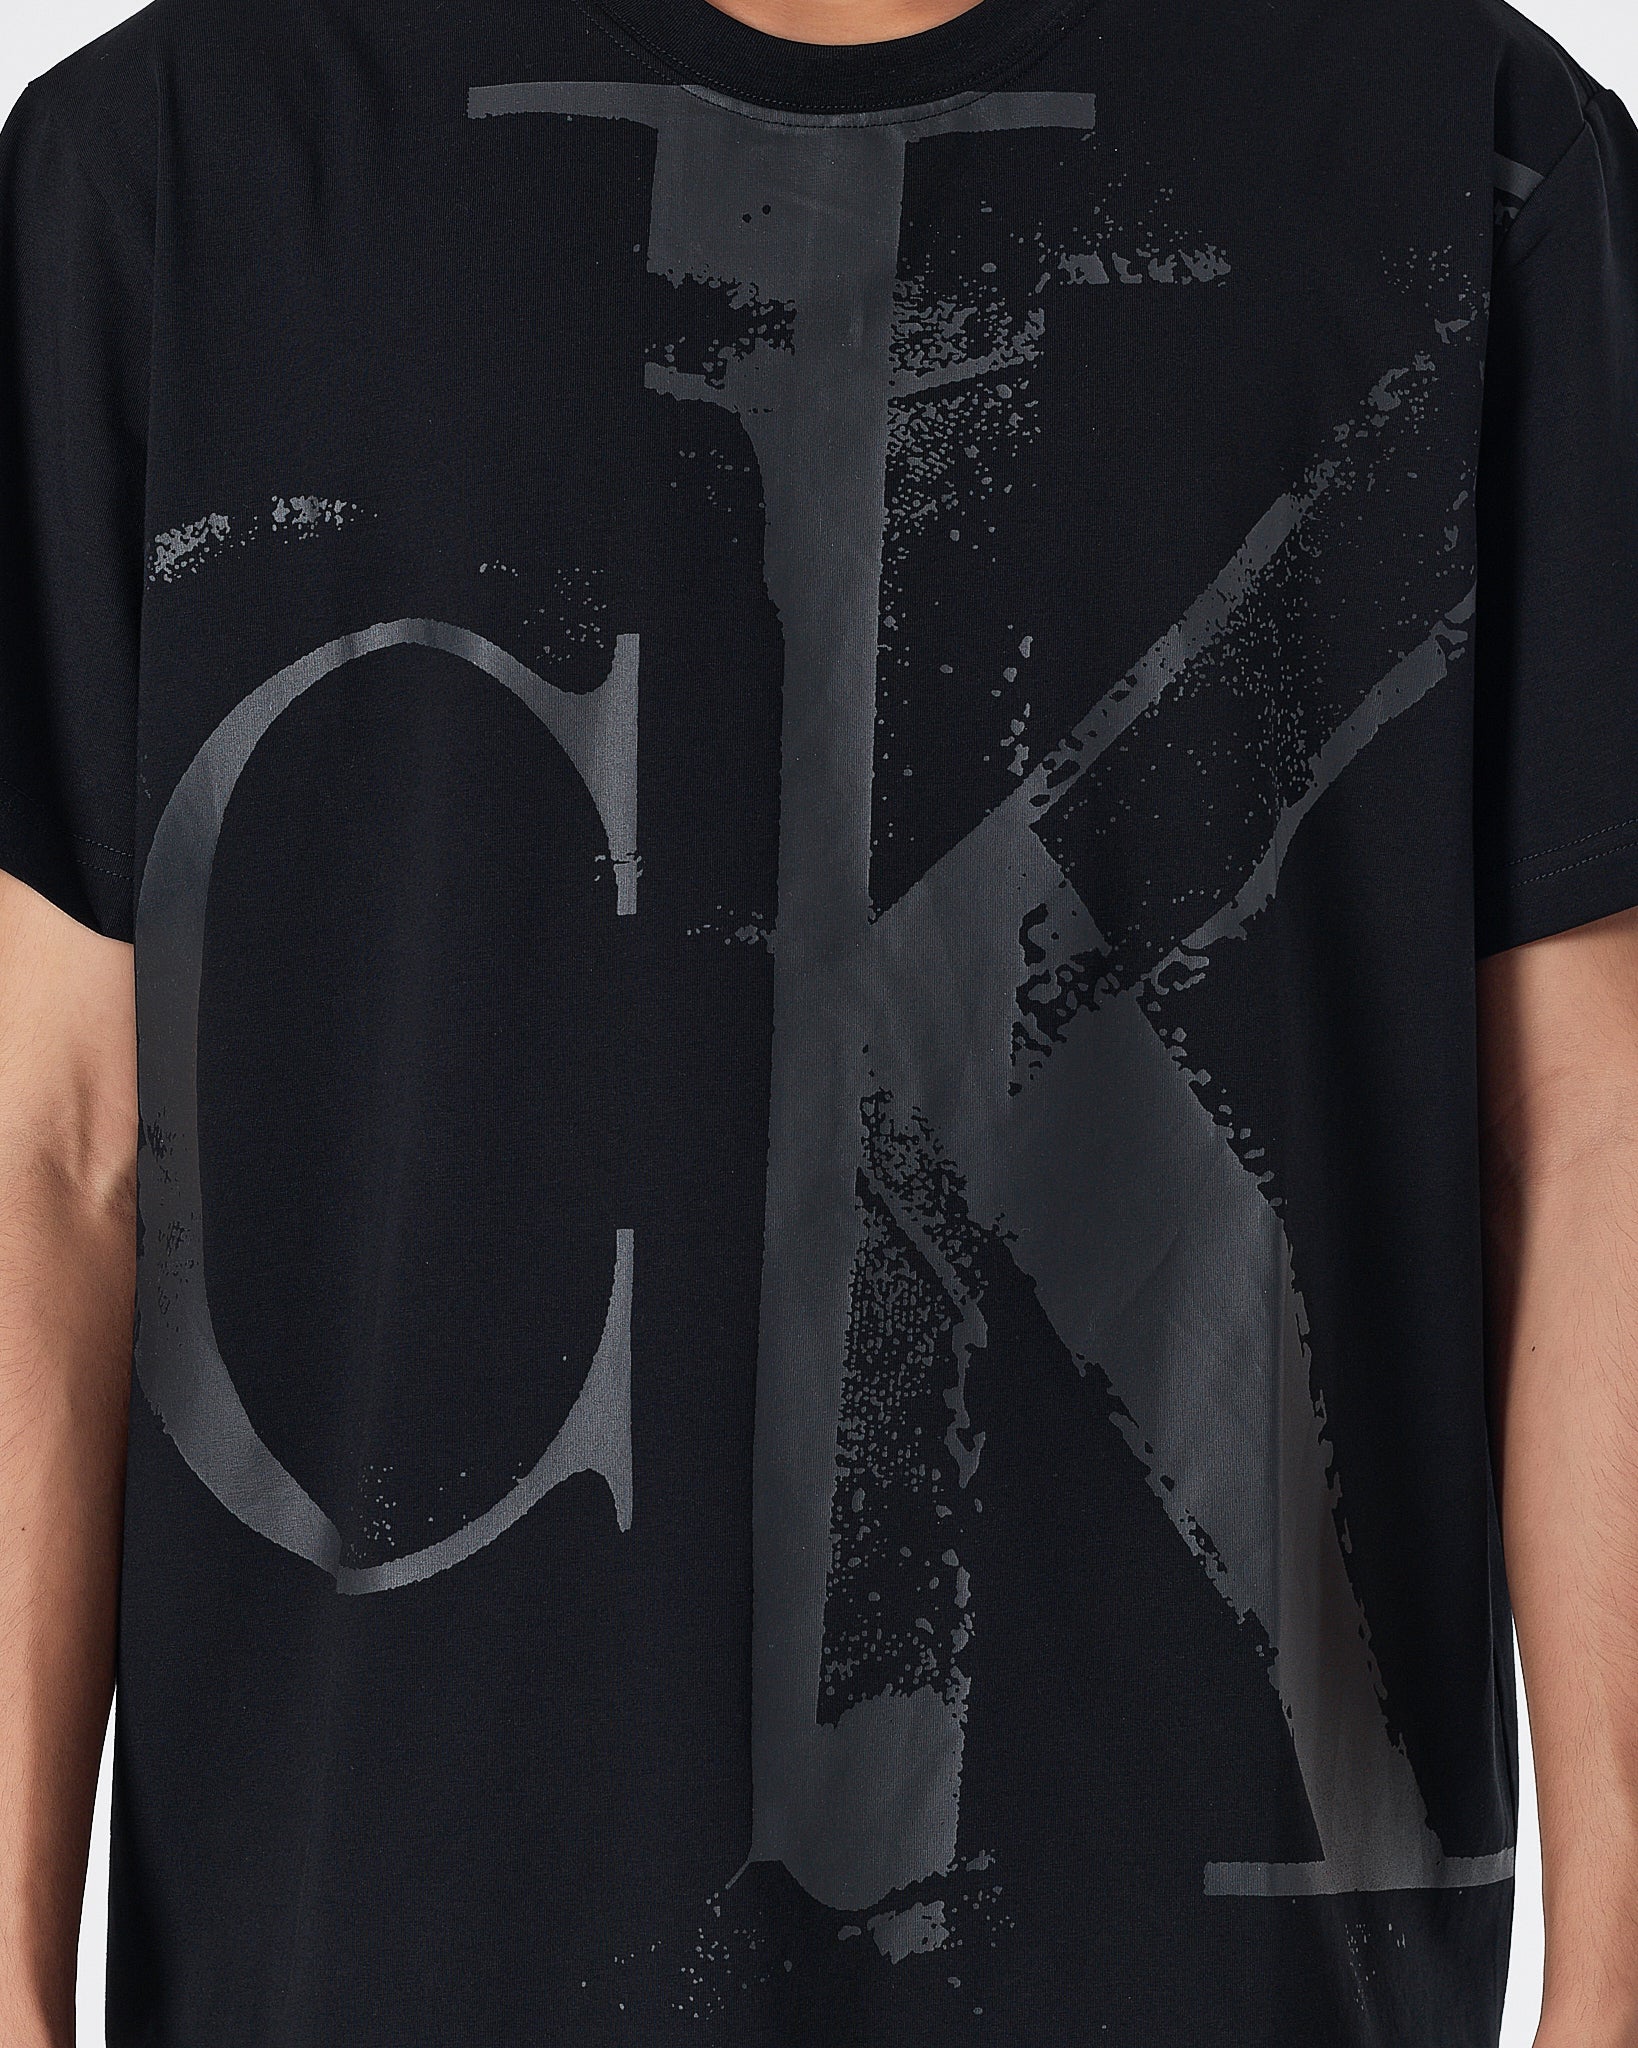 CK Logo Printed Men Black  T-Shirt 16.90